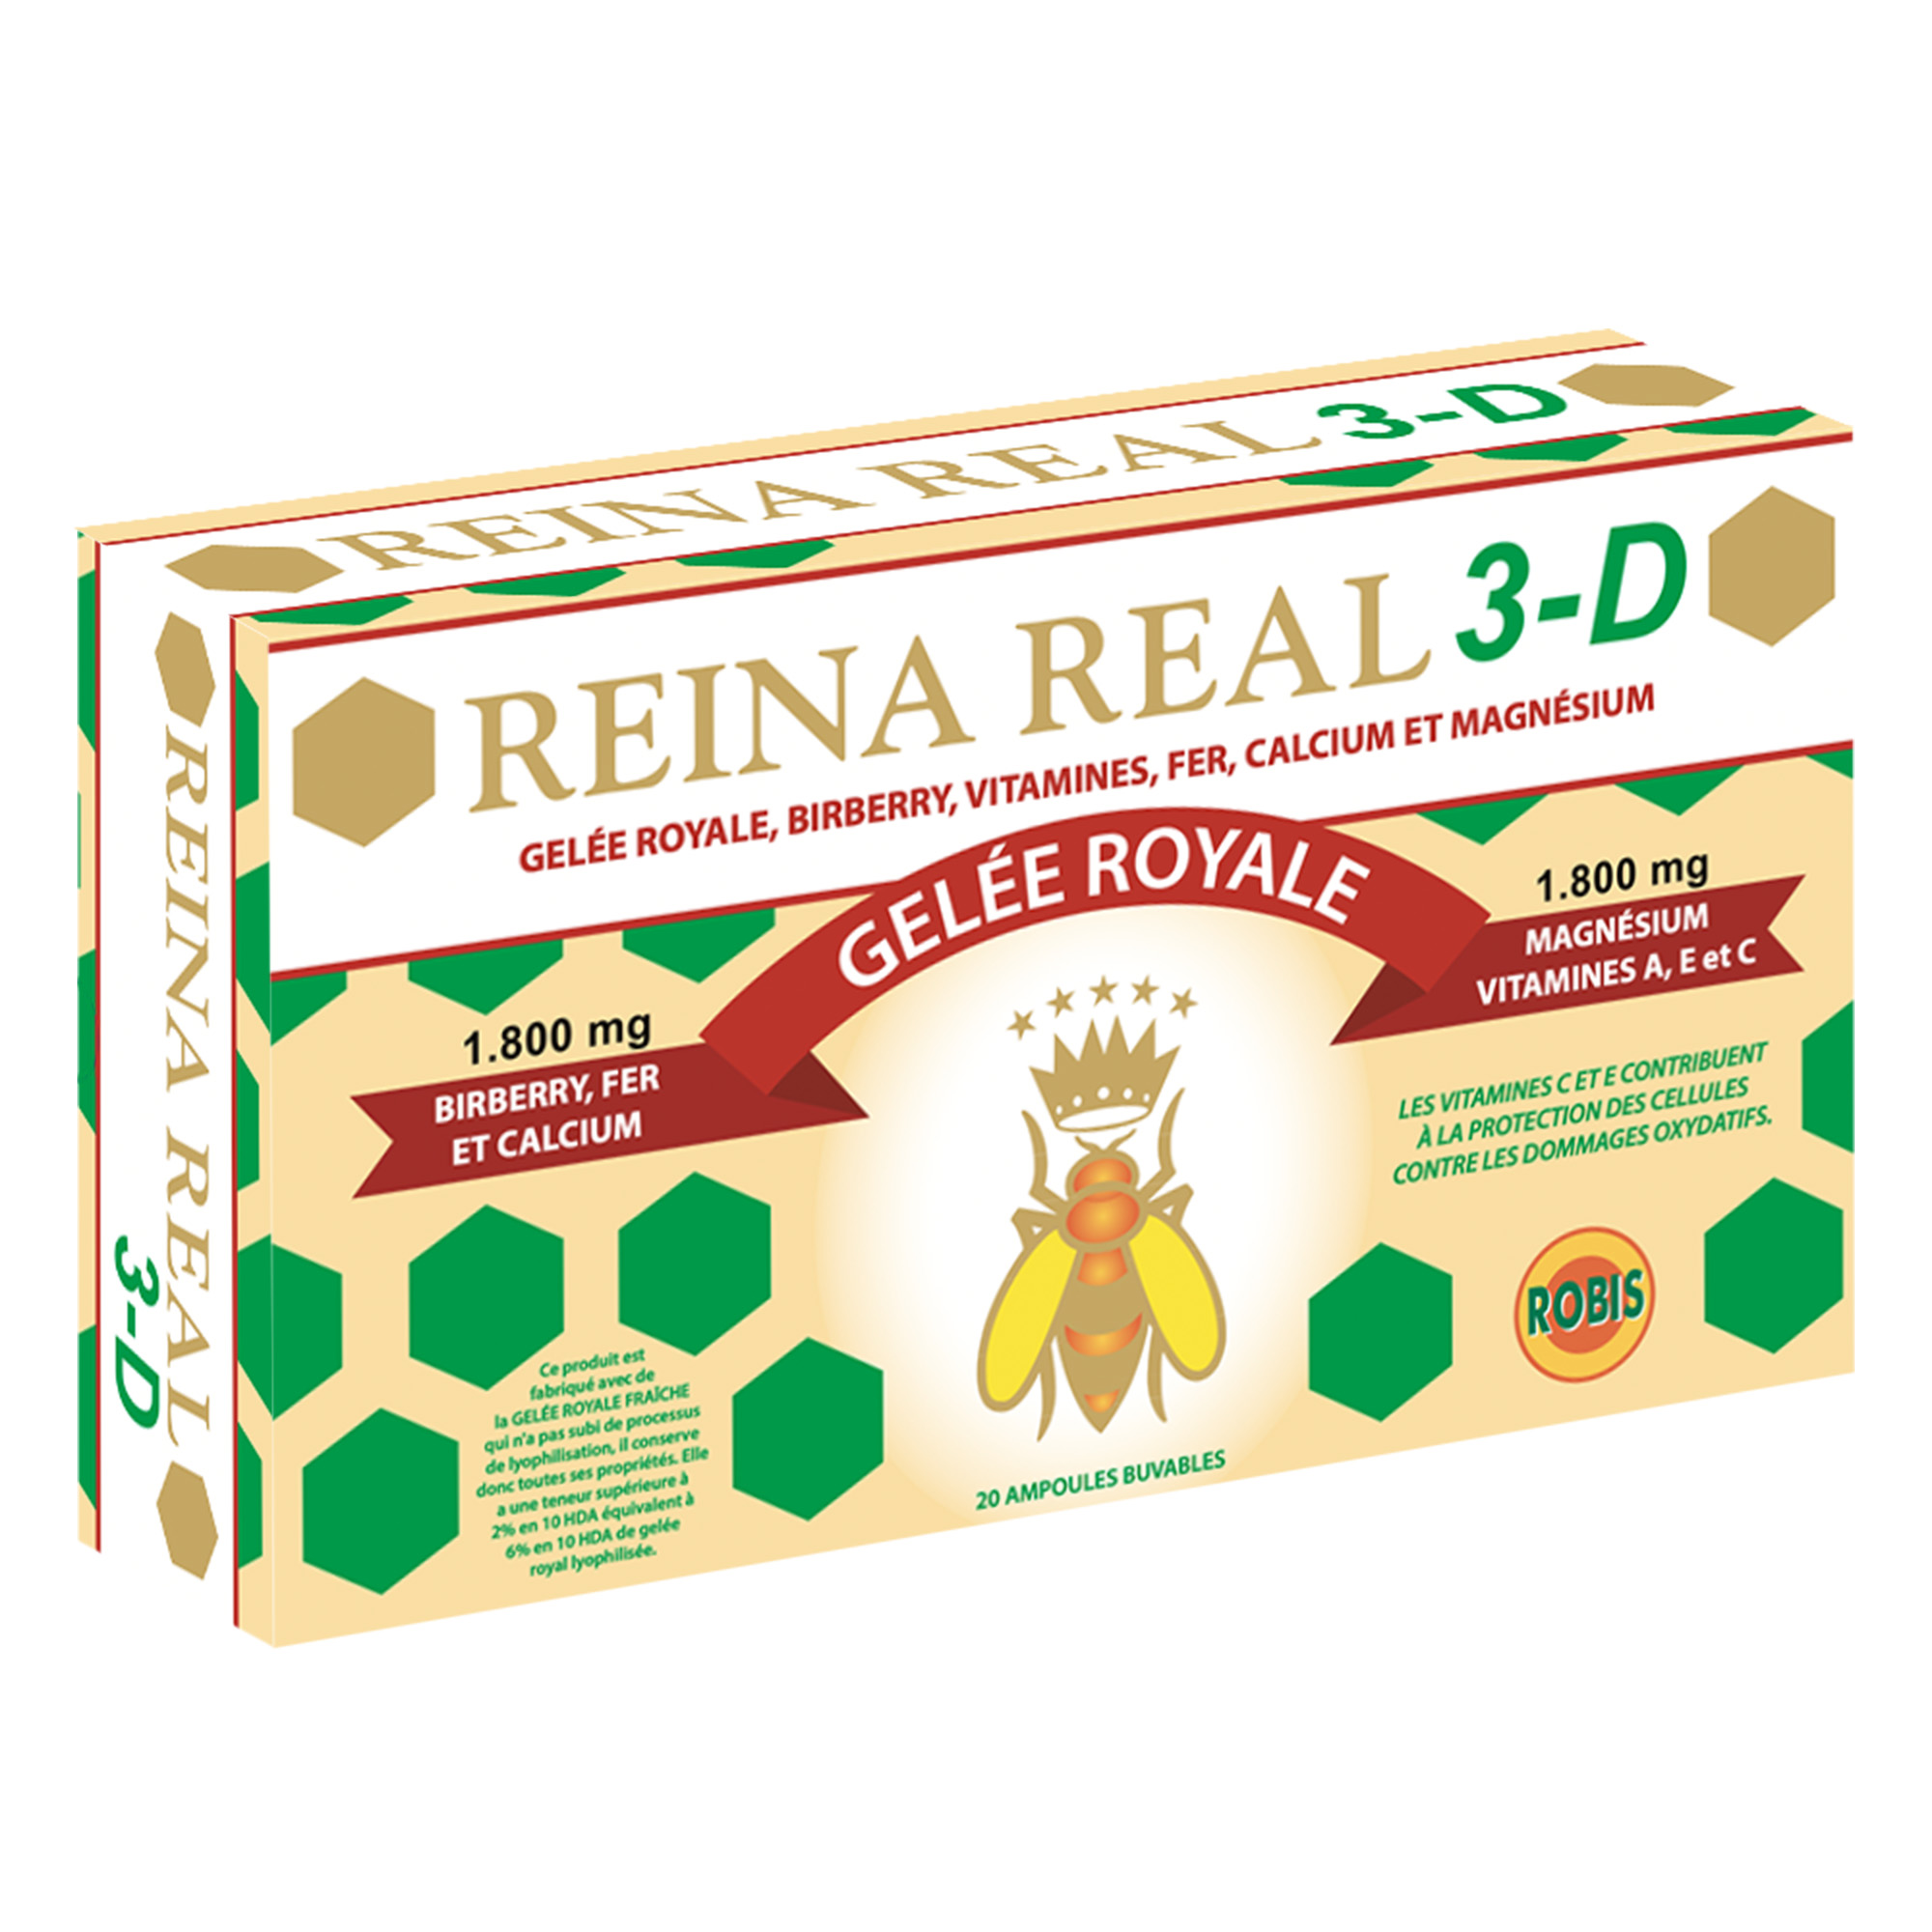 Reina Real 3-D